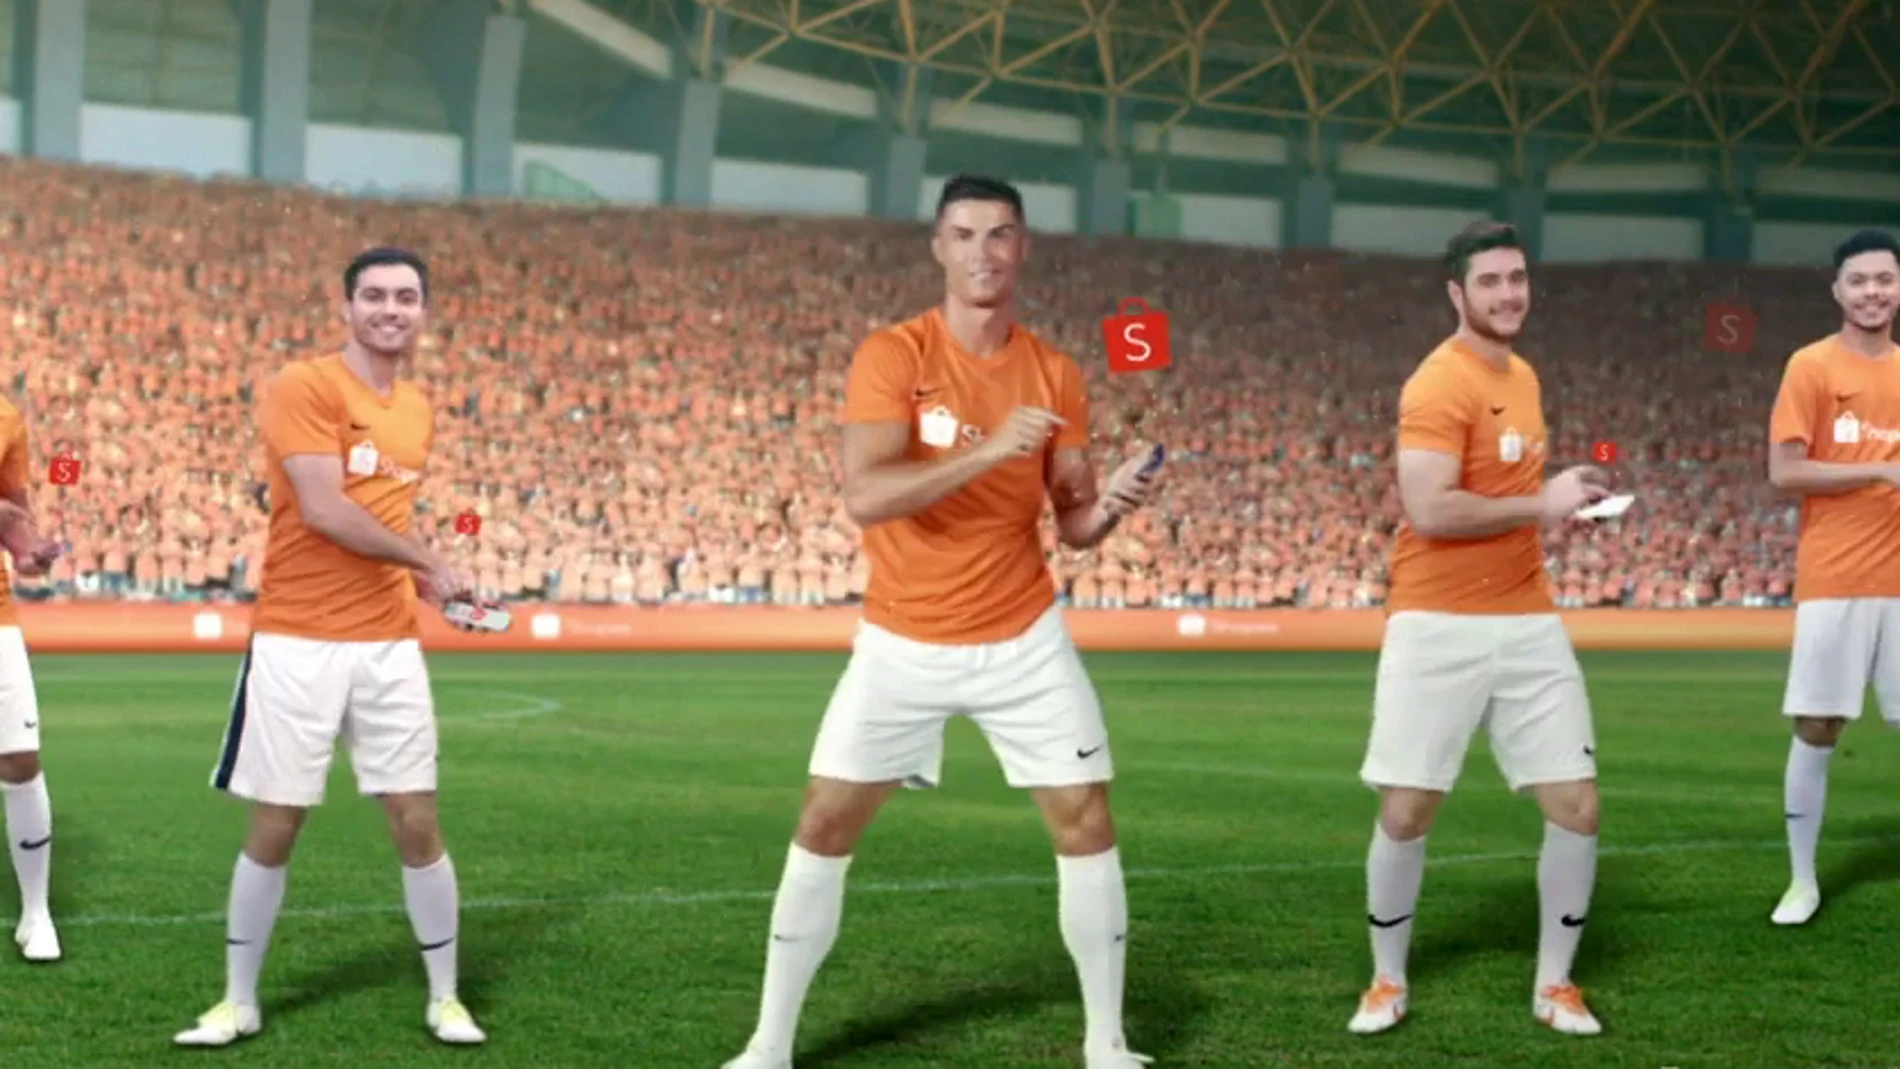 Talentoso Mm Motear El peor anuncio de Cristiano Ronaldo? Ojo al spot que ha desatado las risas  en todo Internet